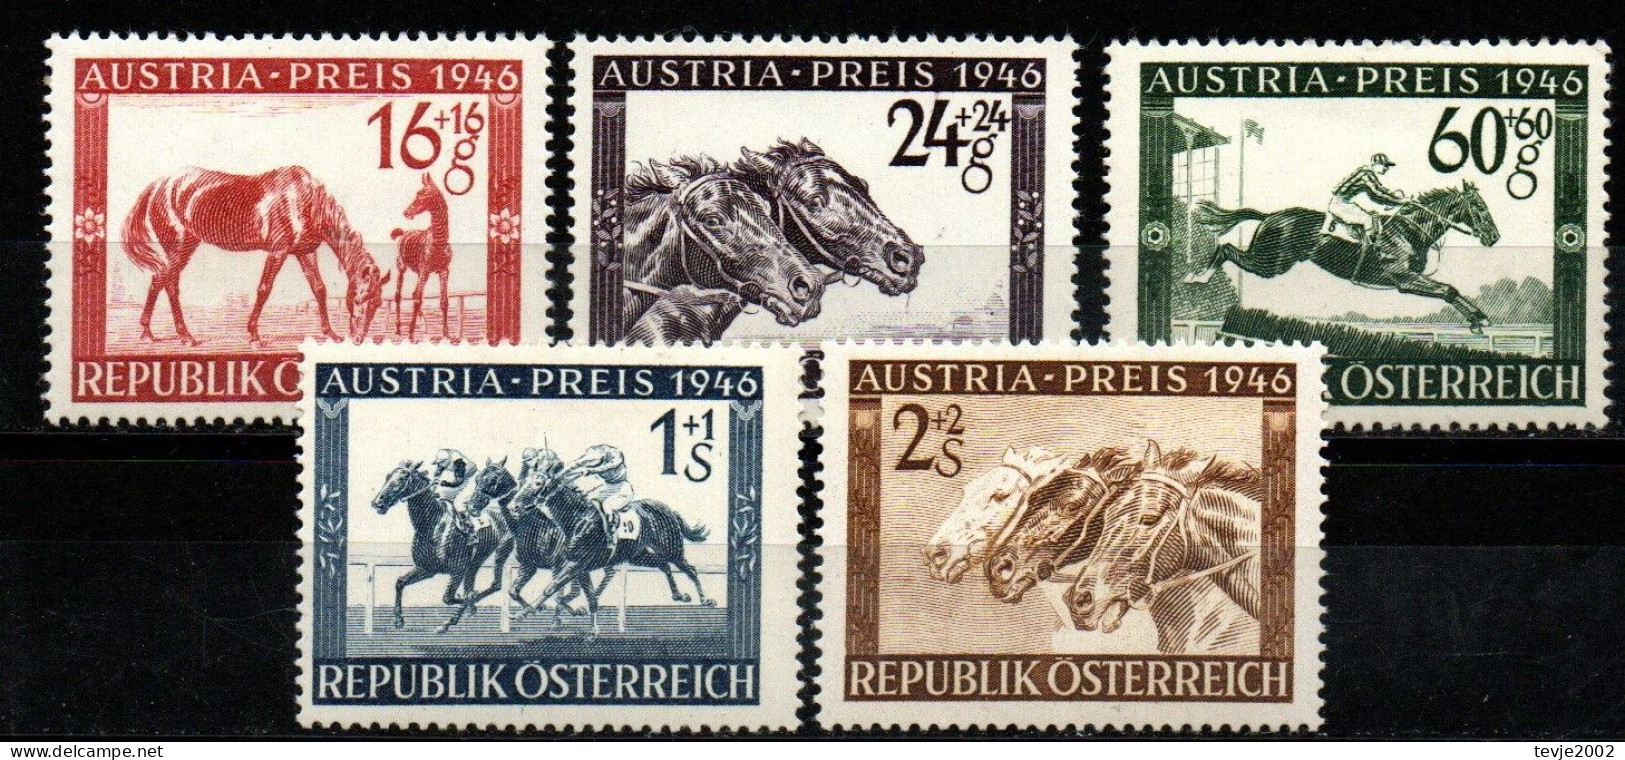 Österreich 1946 - Mi.Nr. 785 - 789 - Postfrisch MNH - Tiere Animals Pferde Horses Sport Reiten Riding - Hípica